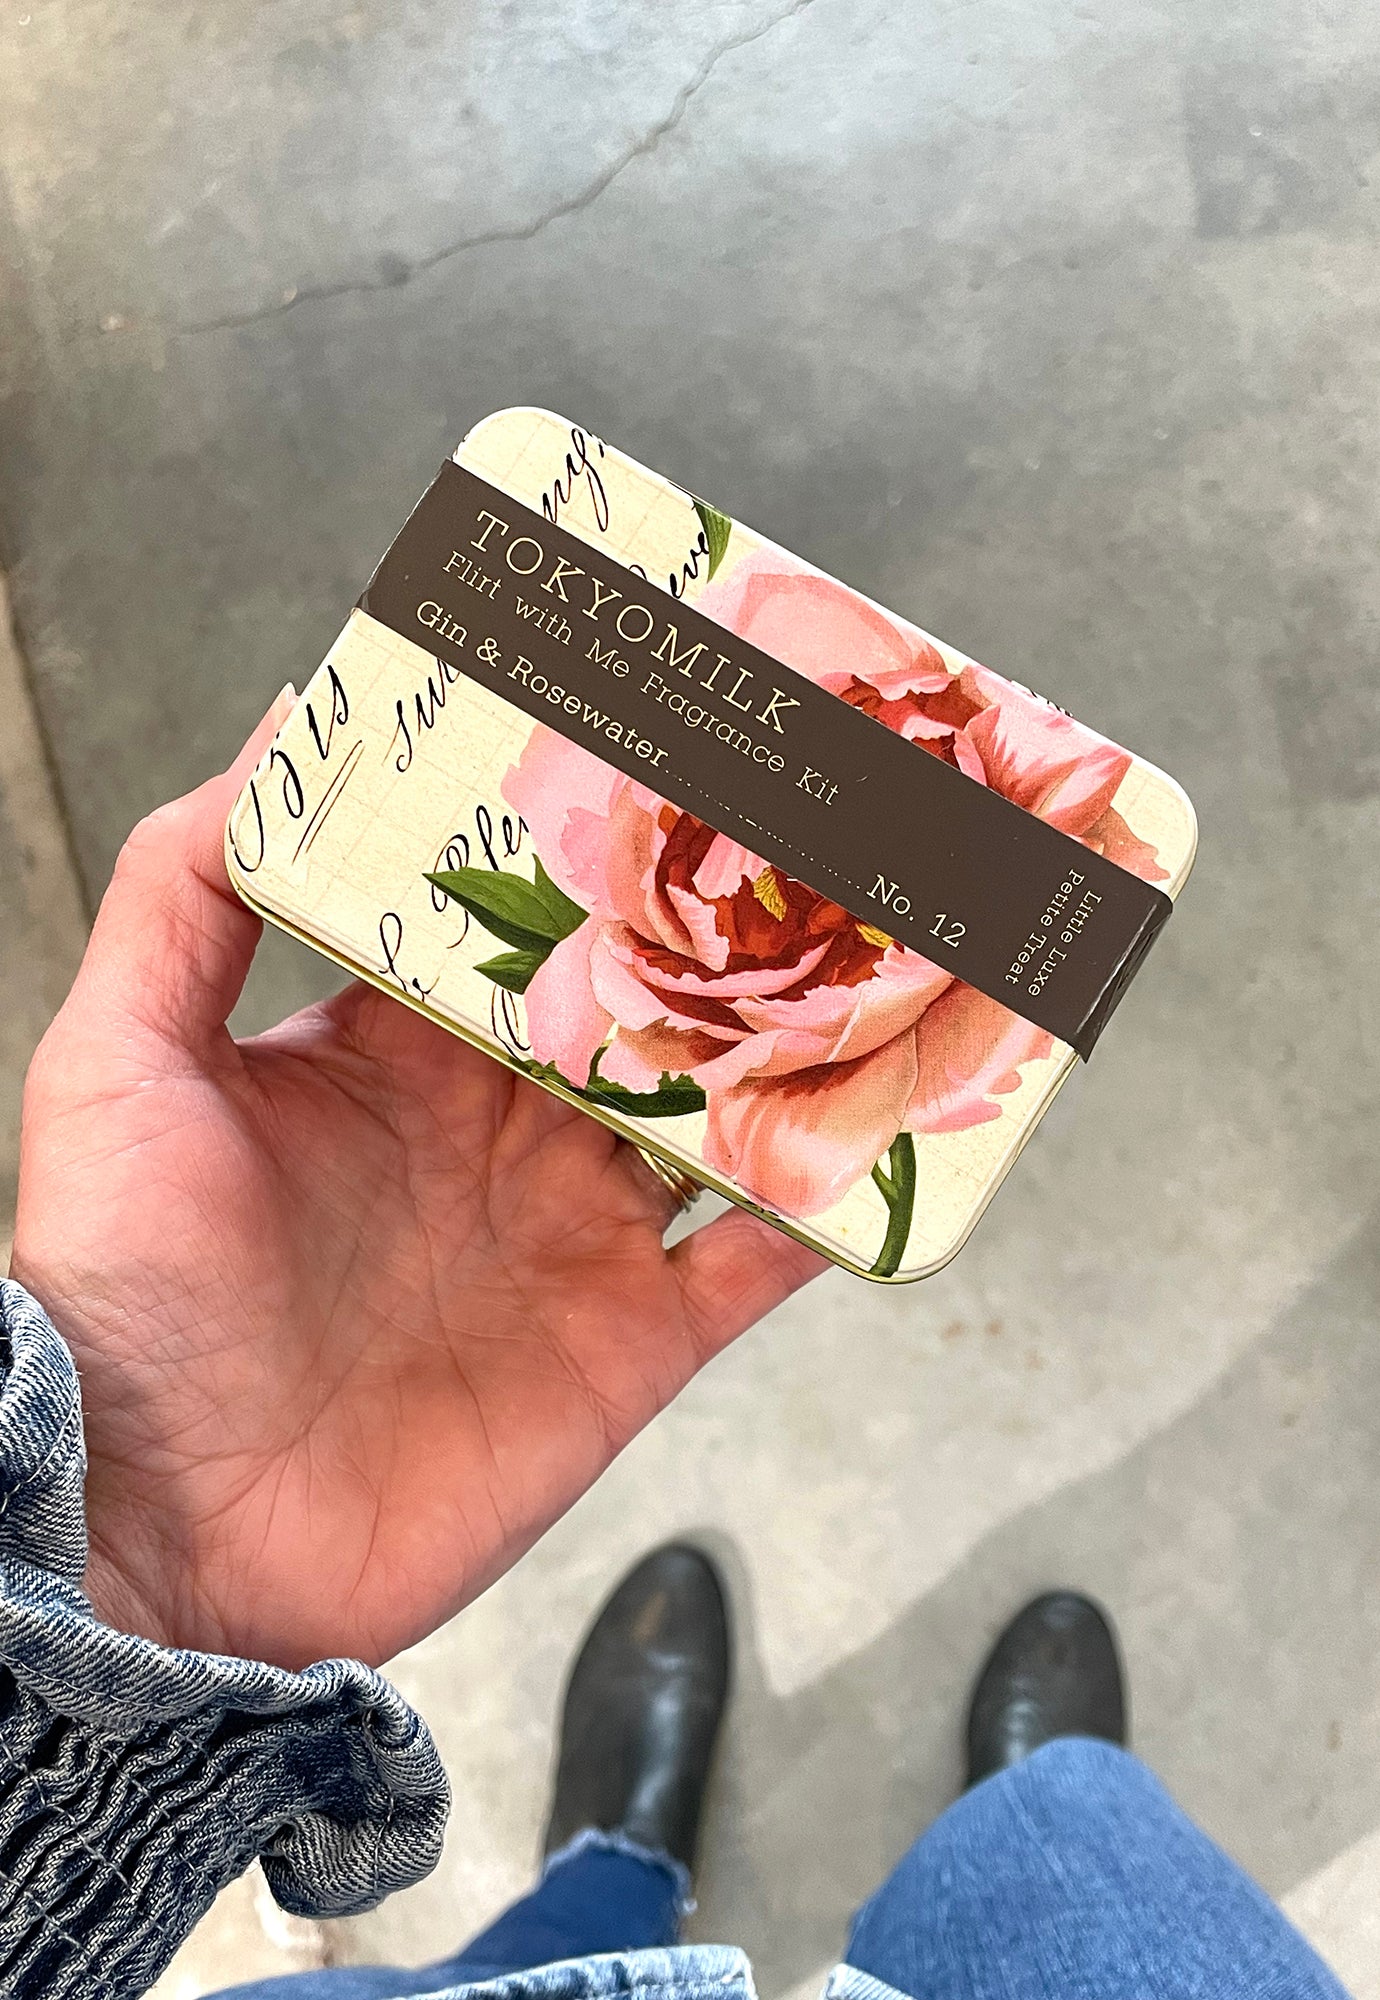 tokyo milk - flirt with me fragrance kit